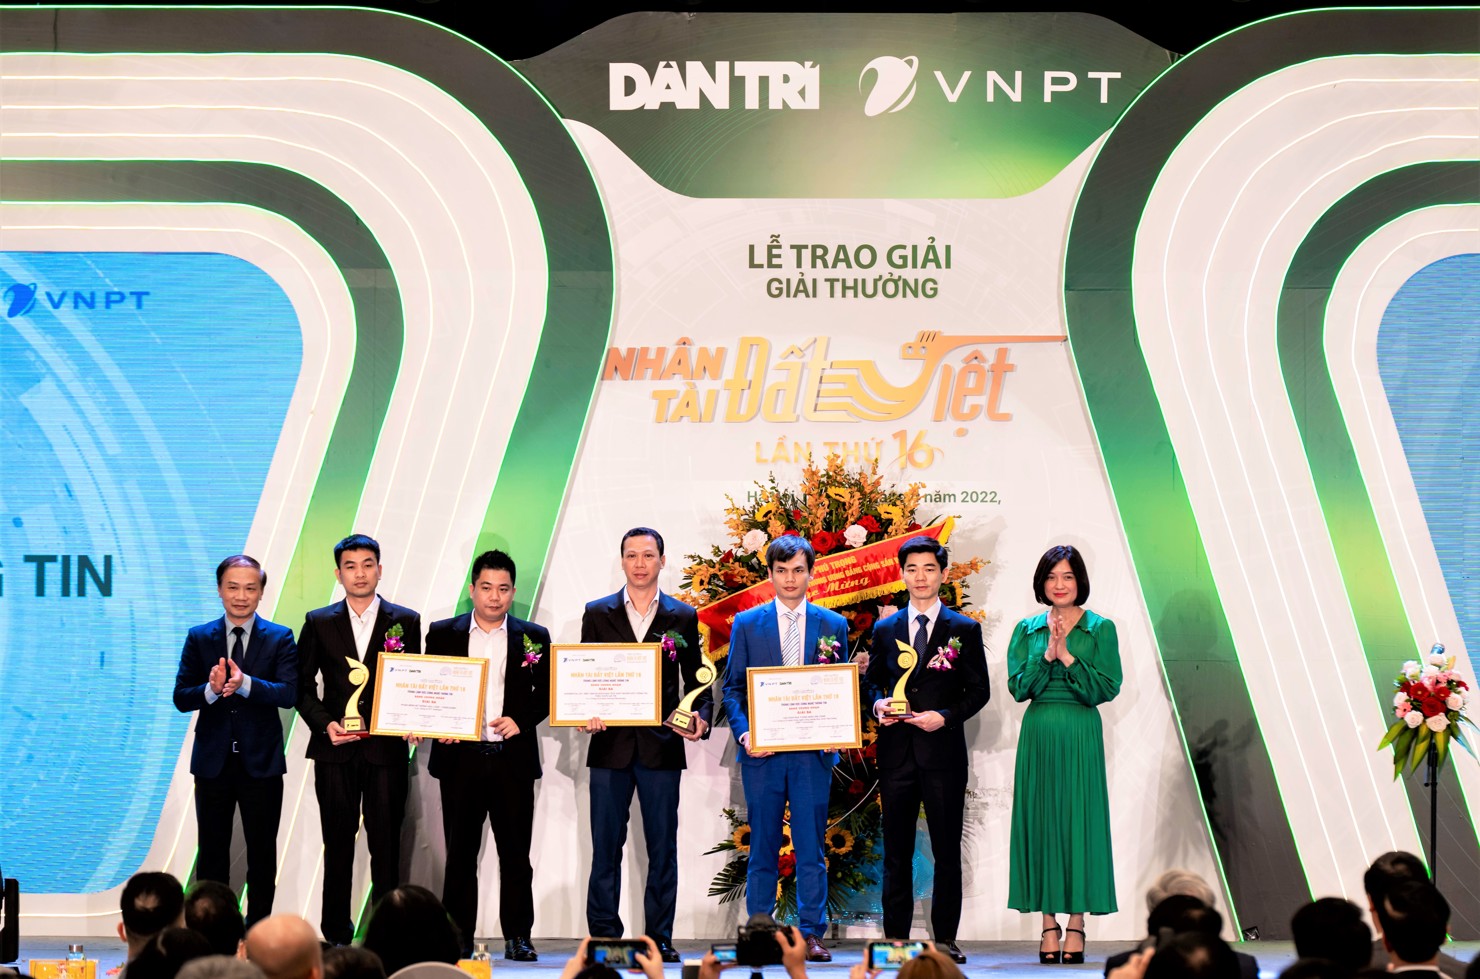 Bà Phùng Nguyễn Hải Yến - Phó Tổng Giám đốc Vietcombank (ngoài cùng bên phải) trao giải thưởng cho các tác giả đạt giải ba về lĩnh vực CNTT